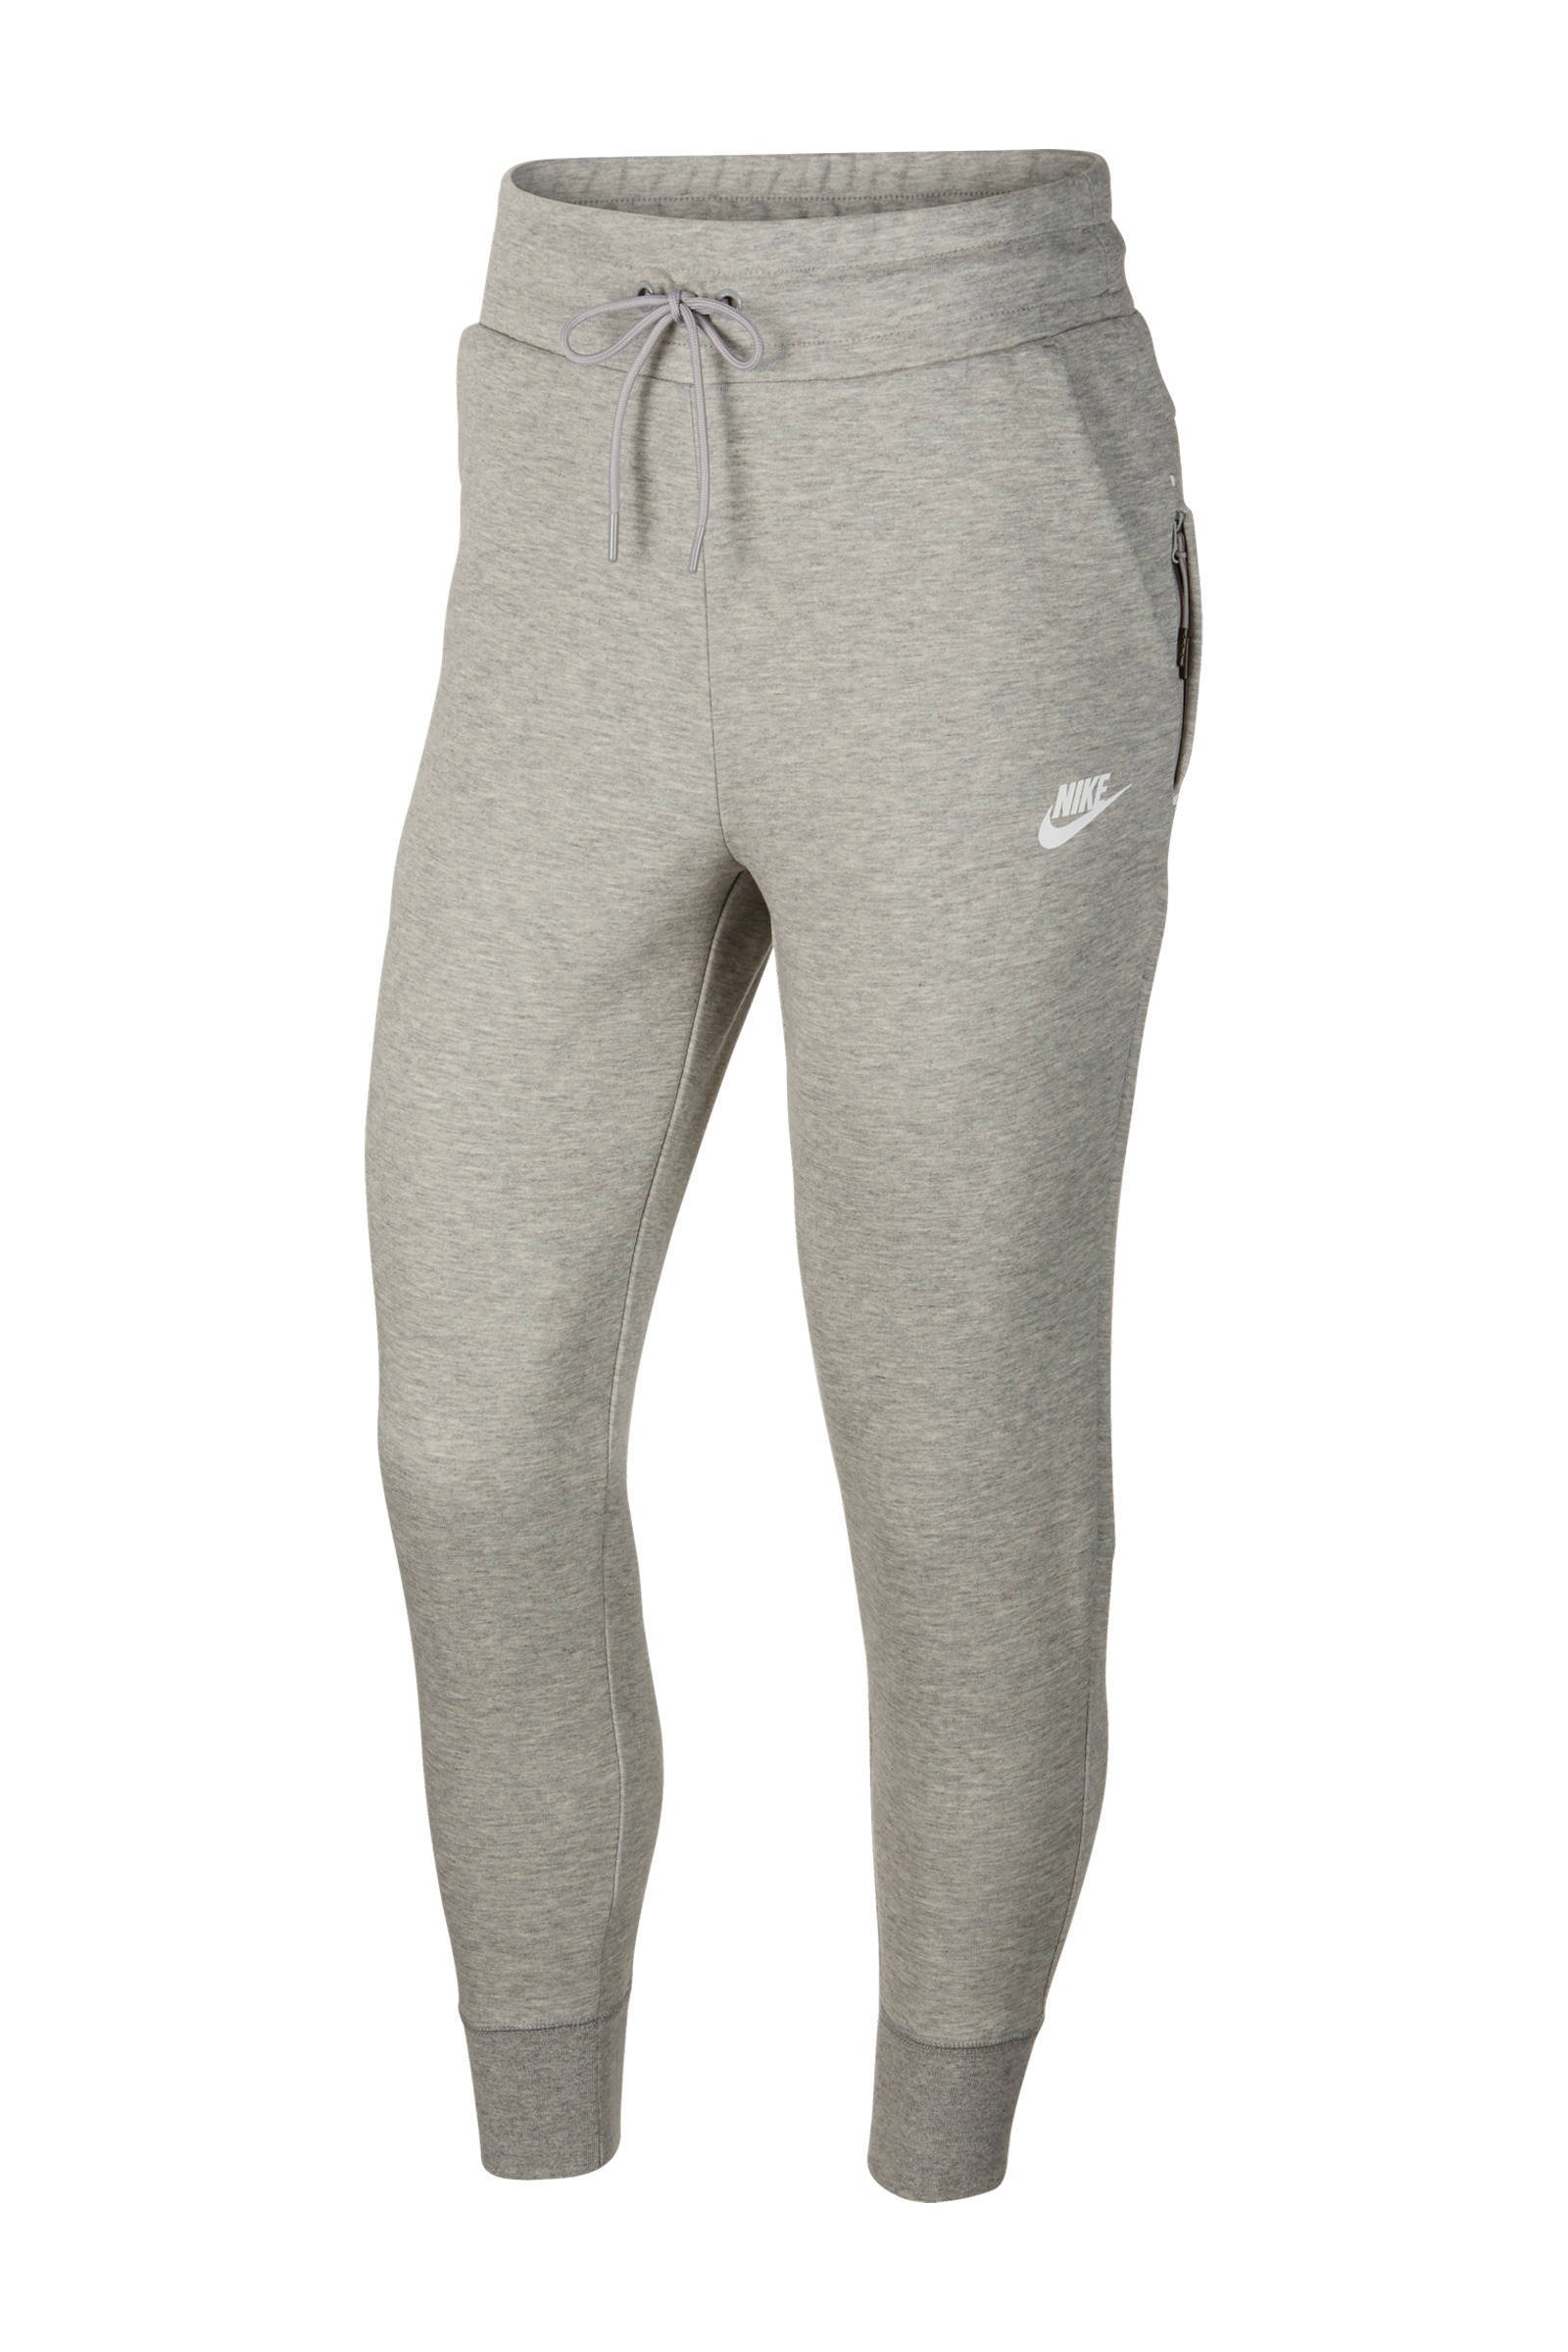 Nike Tech Fleece regular fit joggingbroek met logo grijs melange online kopen